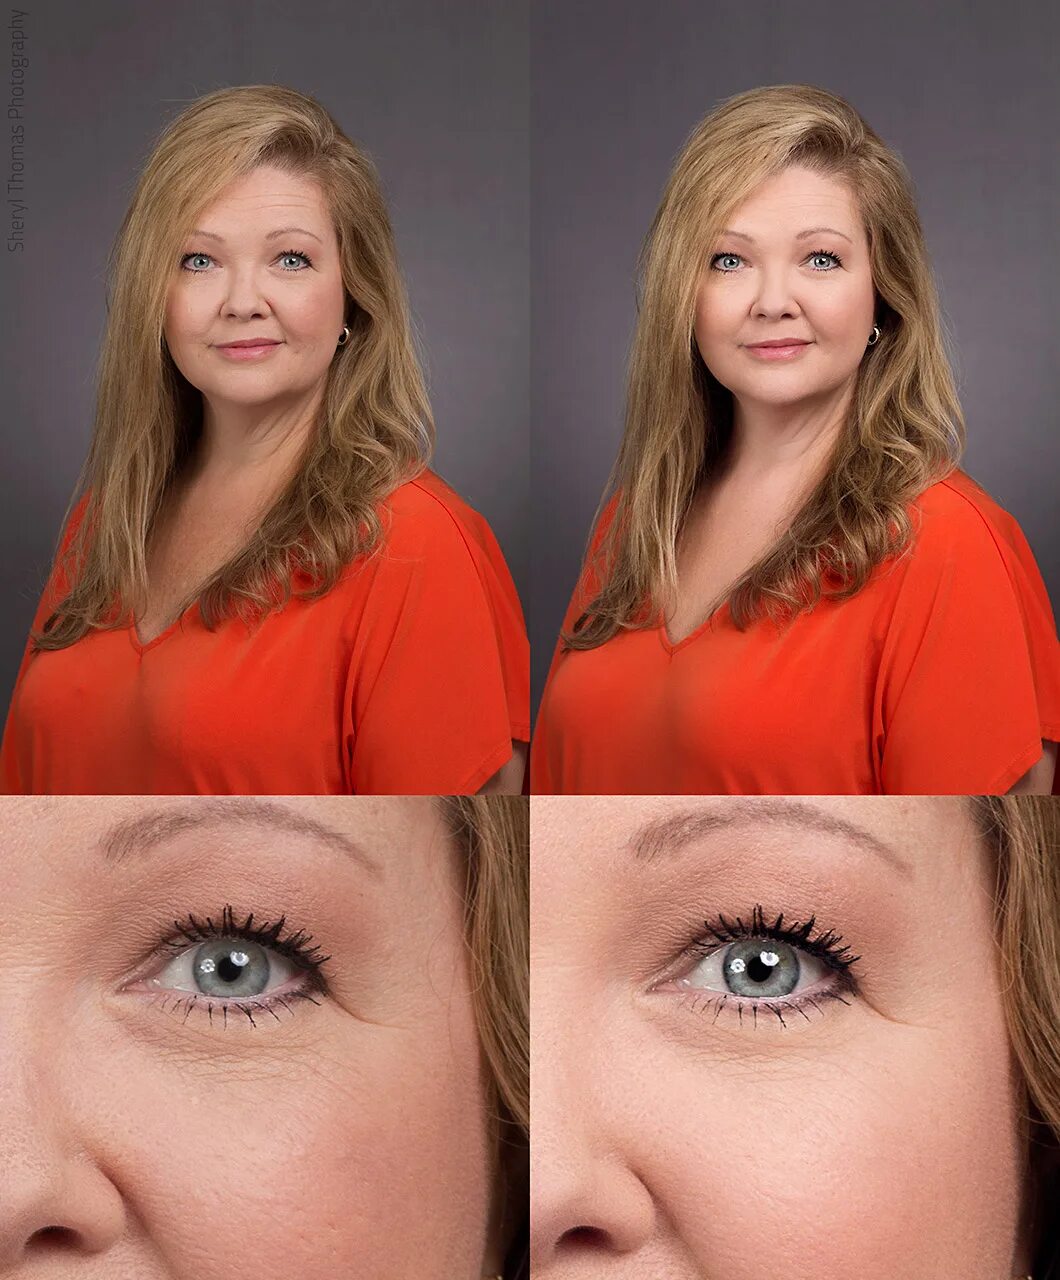 Photos before after. Before after. Before after фото. Редакторы чтобы фотошопить себя с людьми. Before/after цветной.